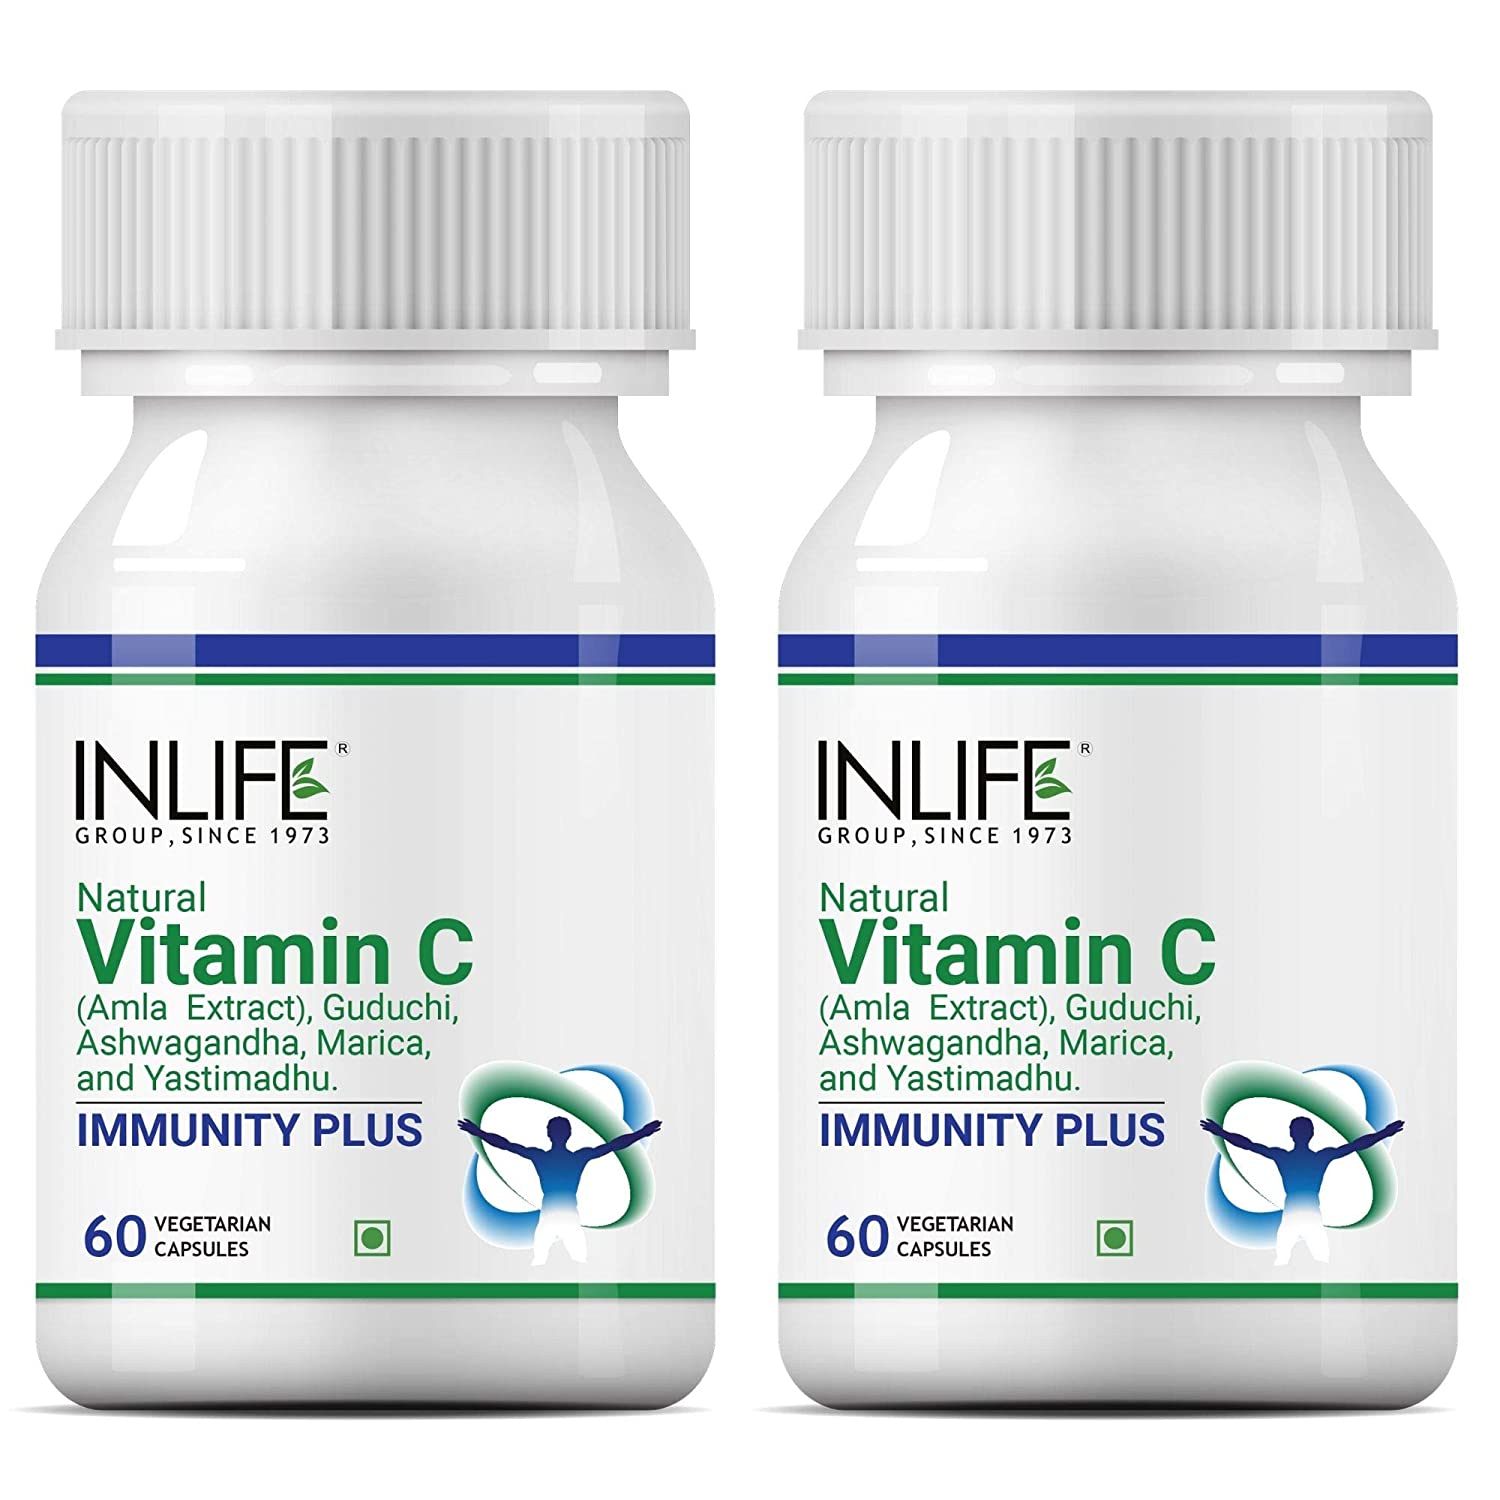 INLIFE Natural Vitamin C Image